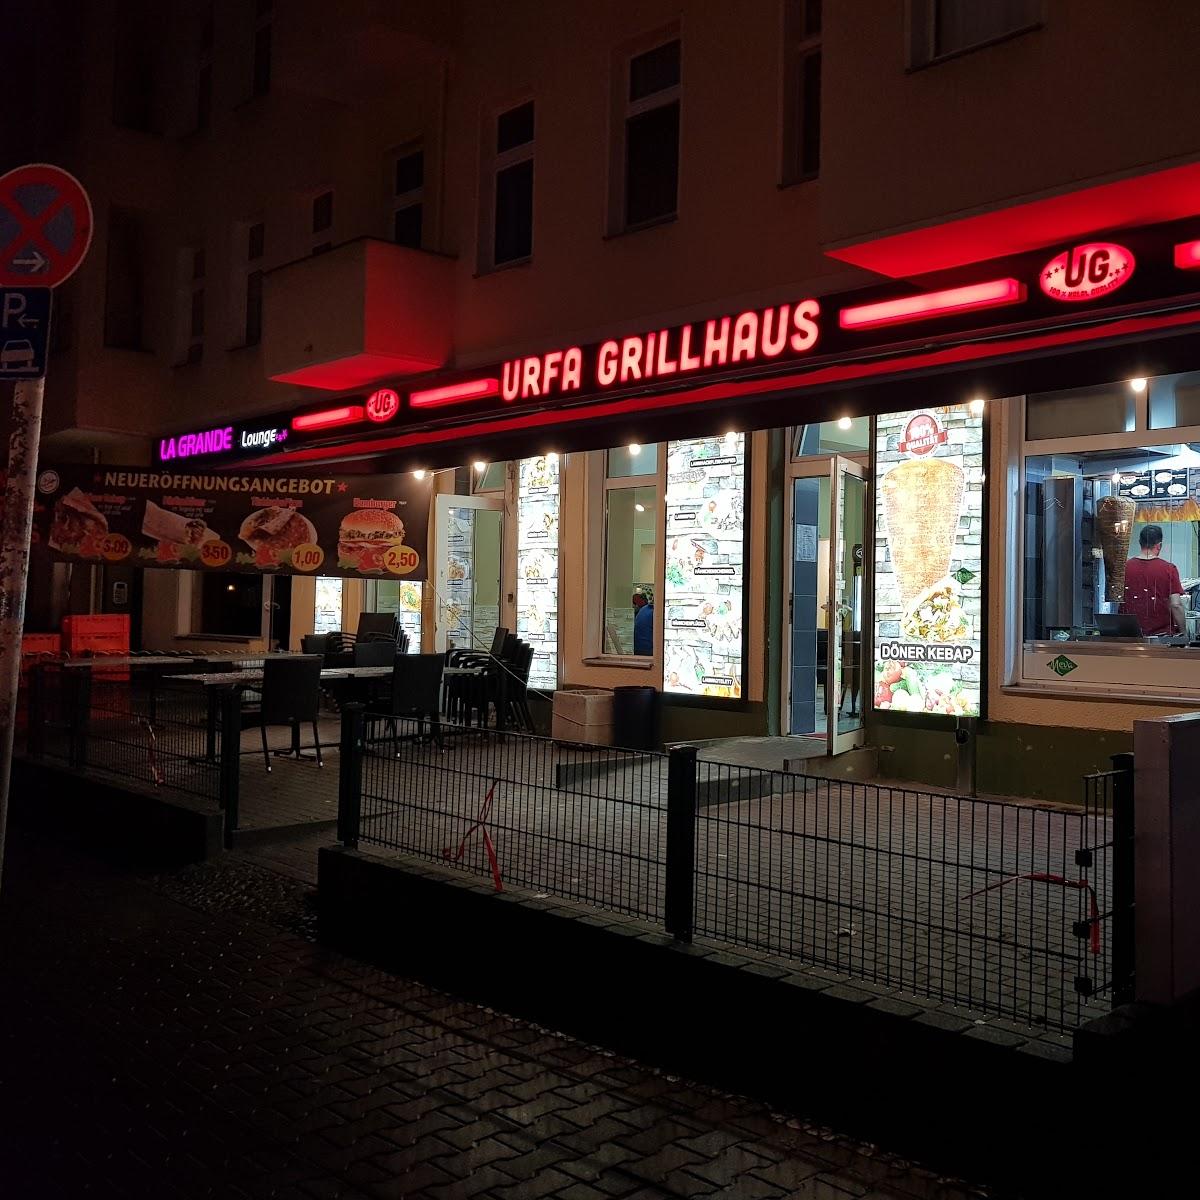 Restaurant "Urfa Grillhaus" in Berlin